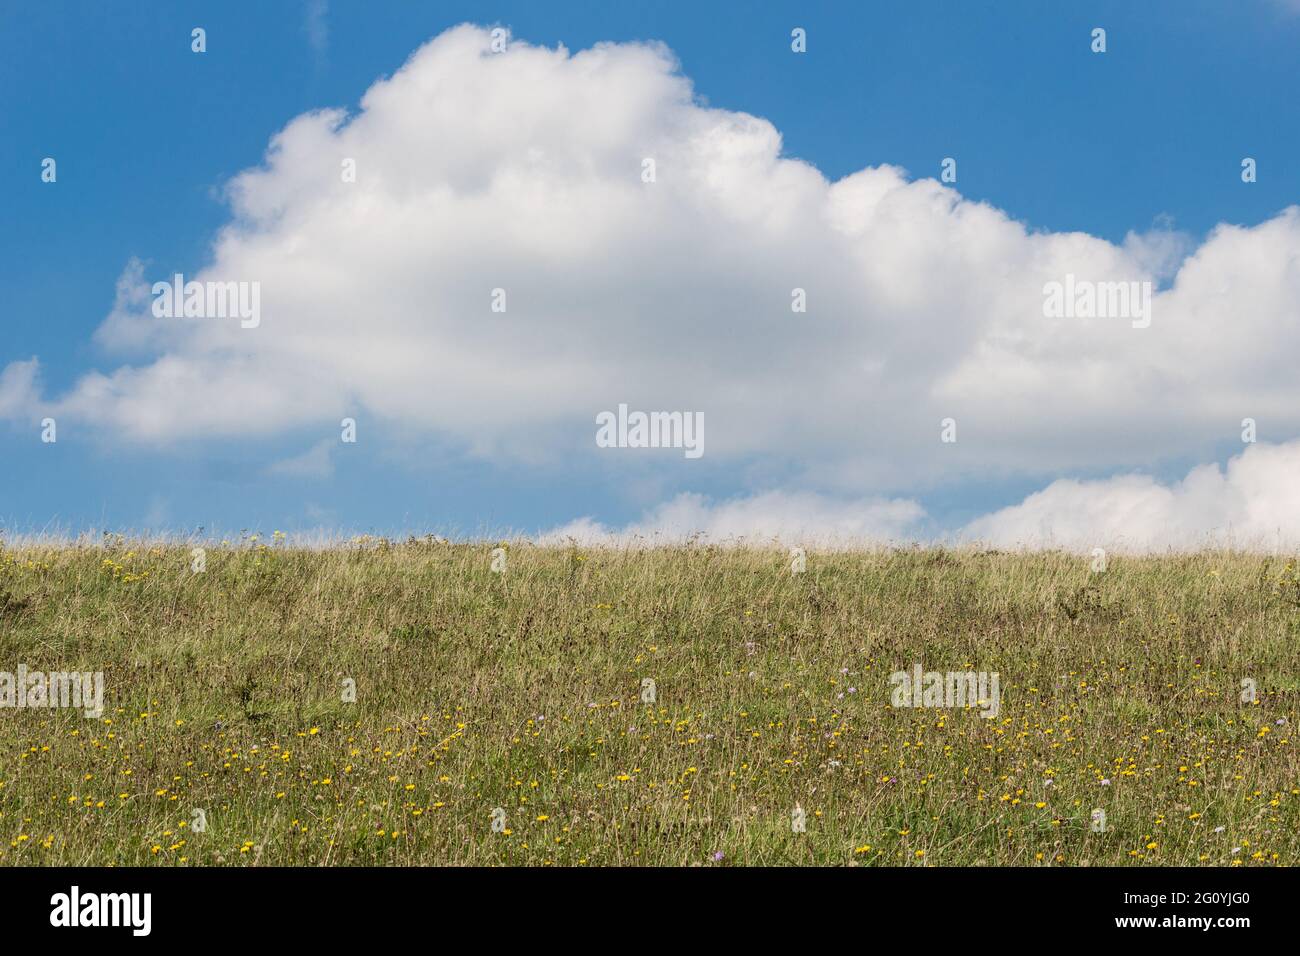 Paysage naturel, champ ouvert avec des nuages blancs moelleux pris dans le sud-est de l'Angleterre près de Devil's Dyke, South Downs. Personne Banque D'Images